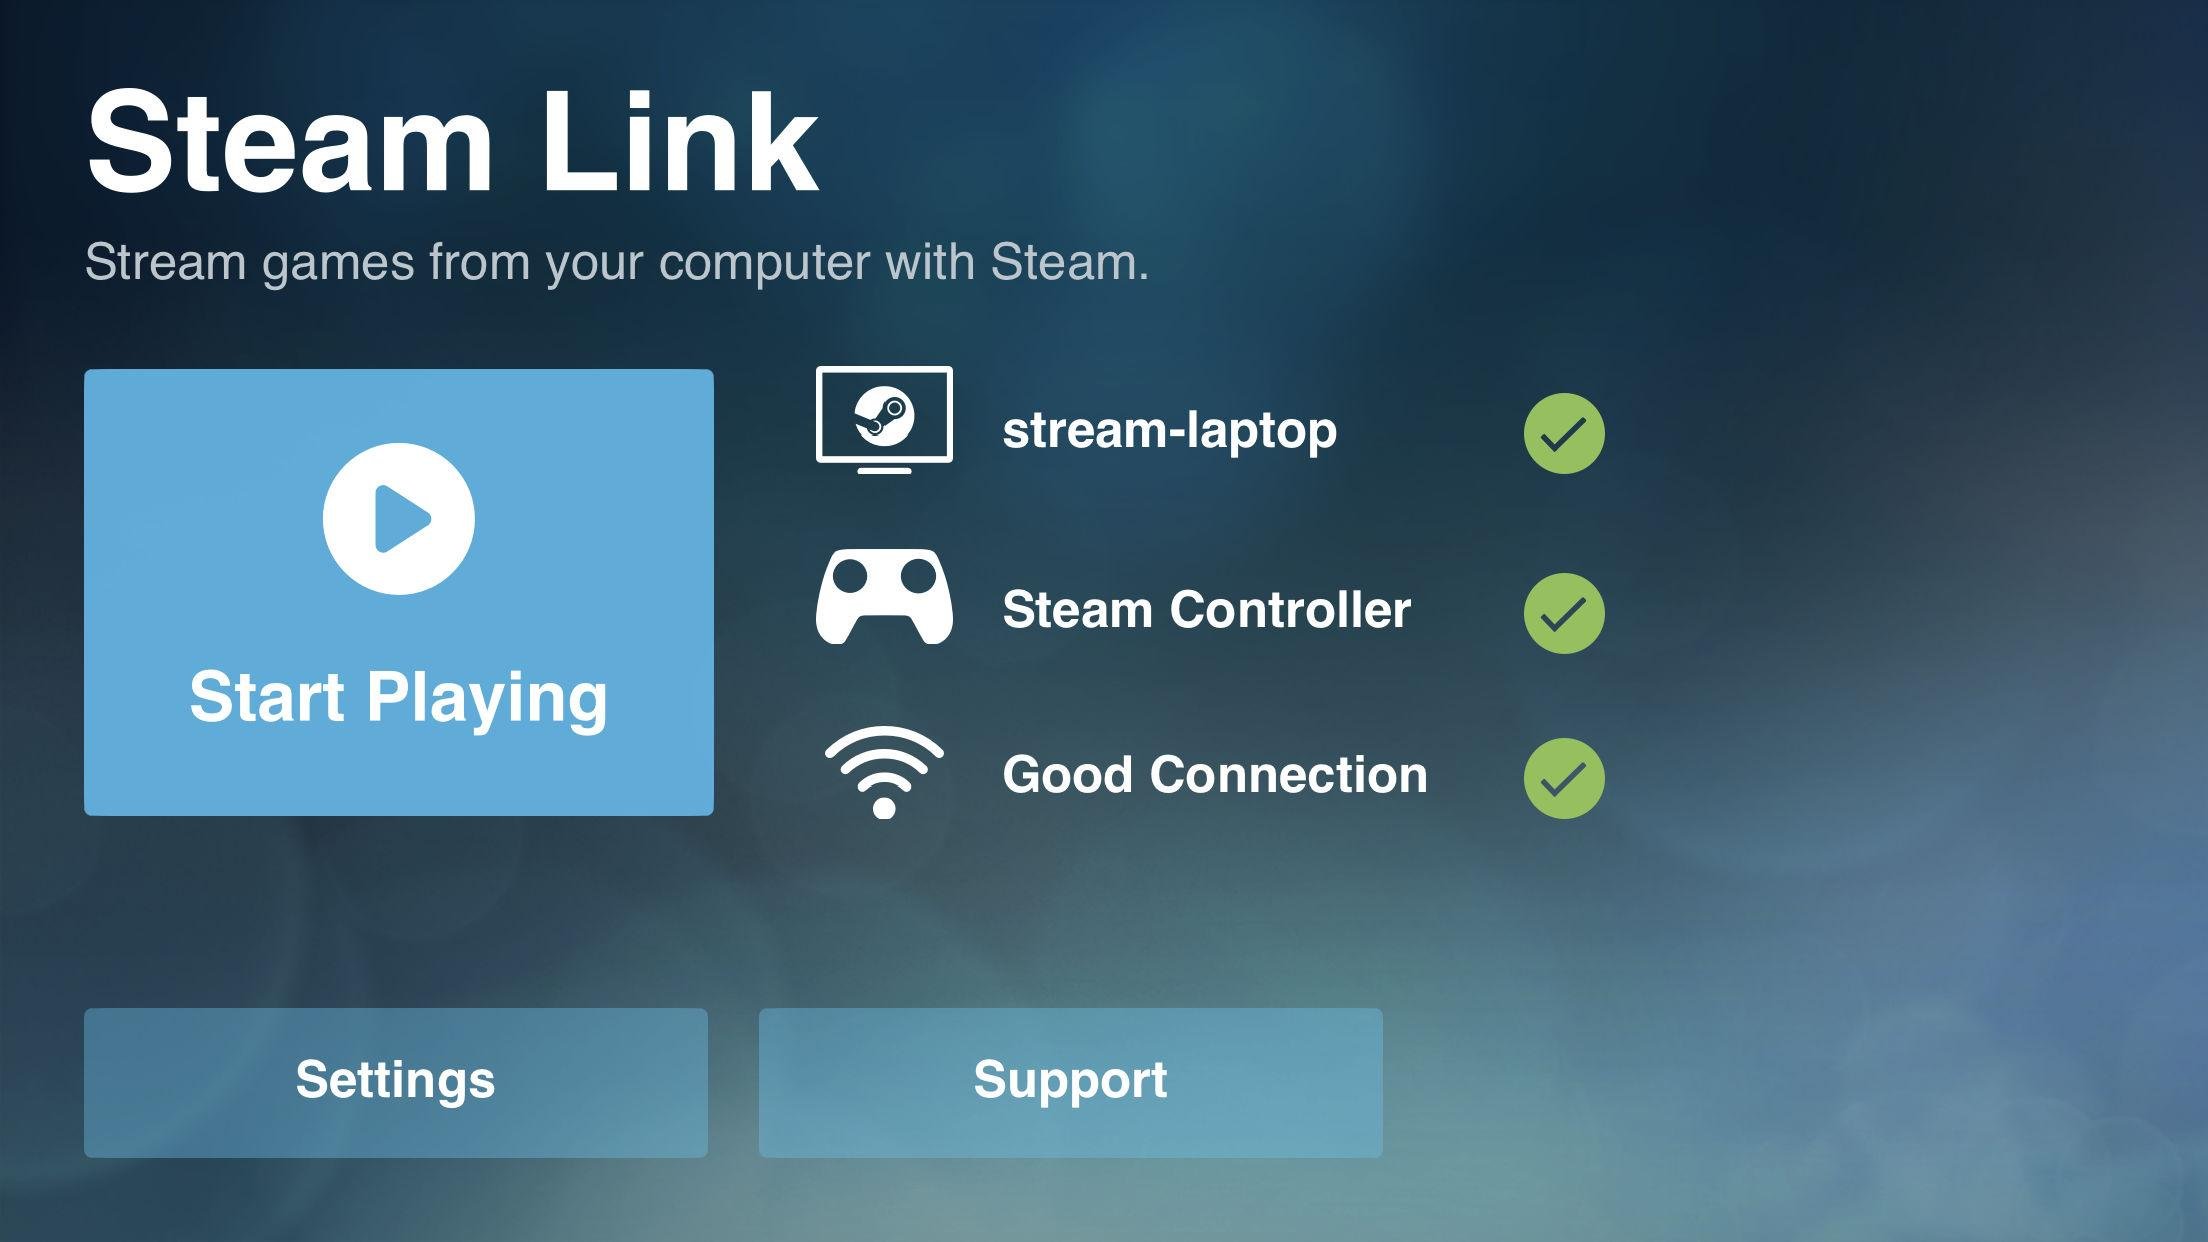 يضيف "Steam Link" الجديد دعمًا لوظائف لوحة المفاتيح والماوس ، وتشغيل الموسيقى أثناء البث ، والمزيد على iOS 2